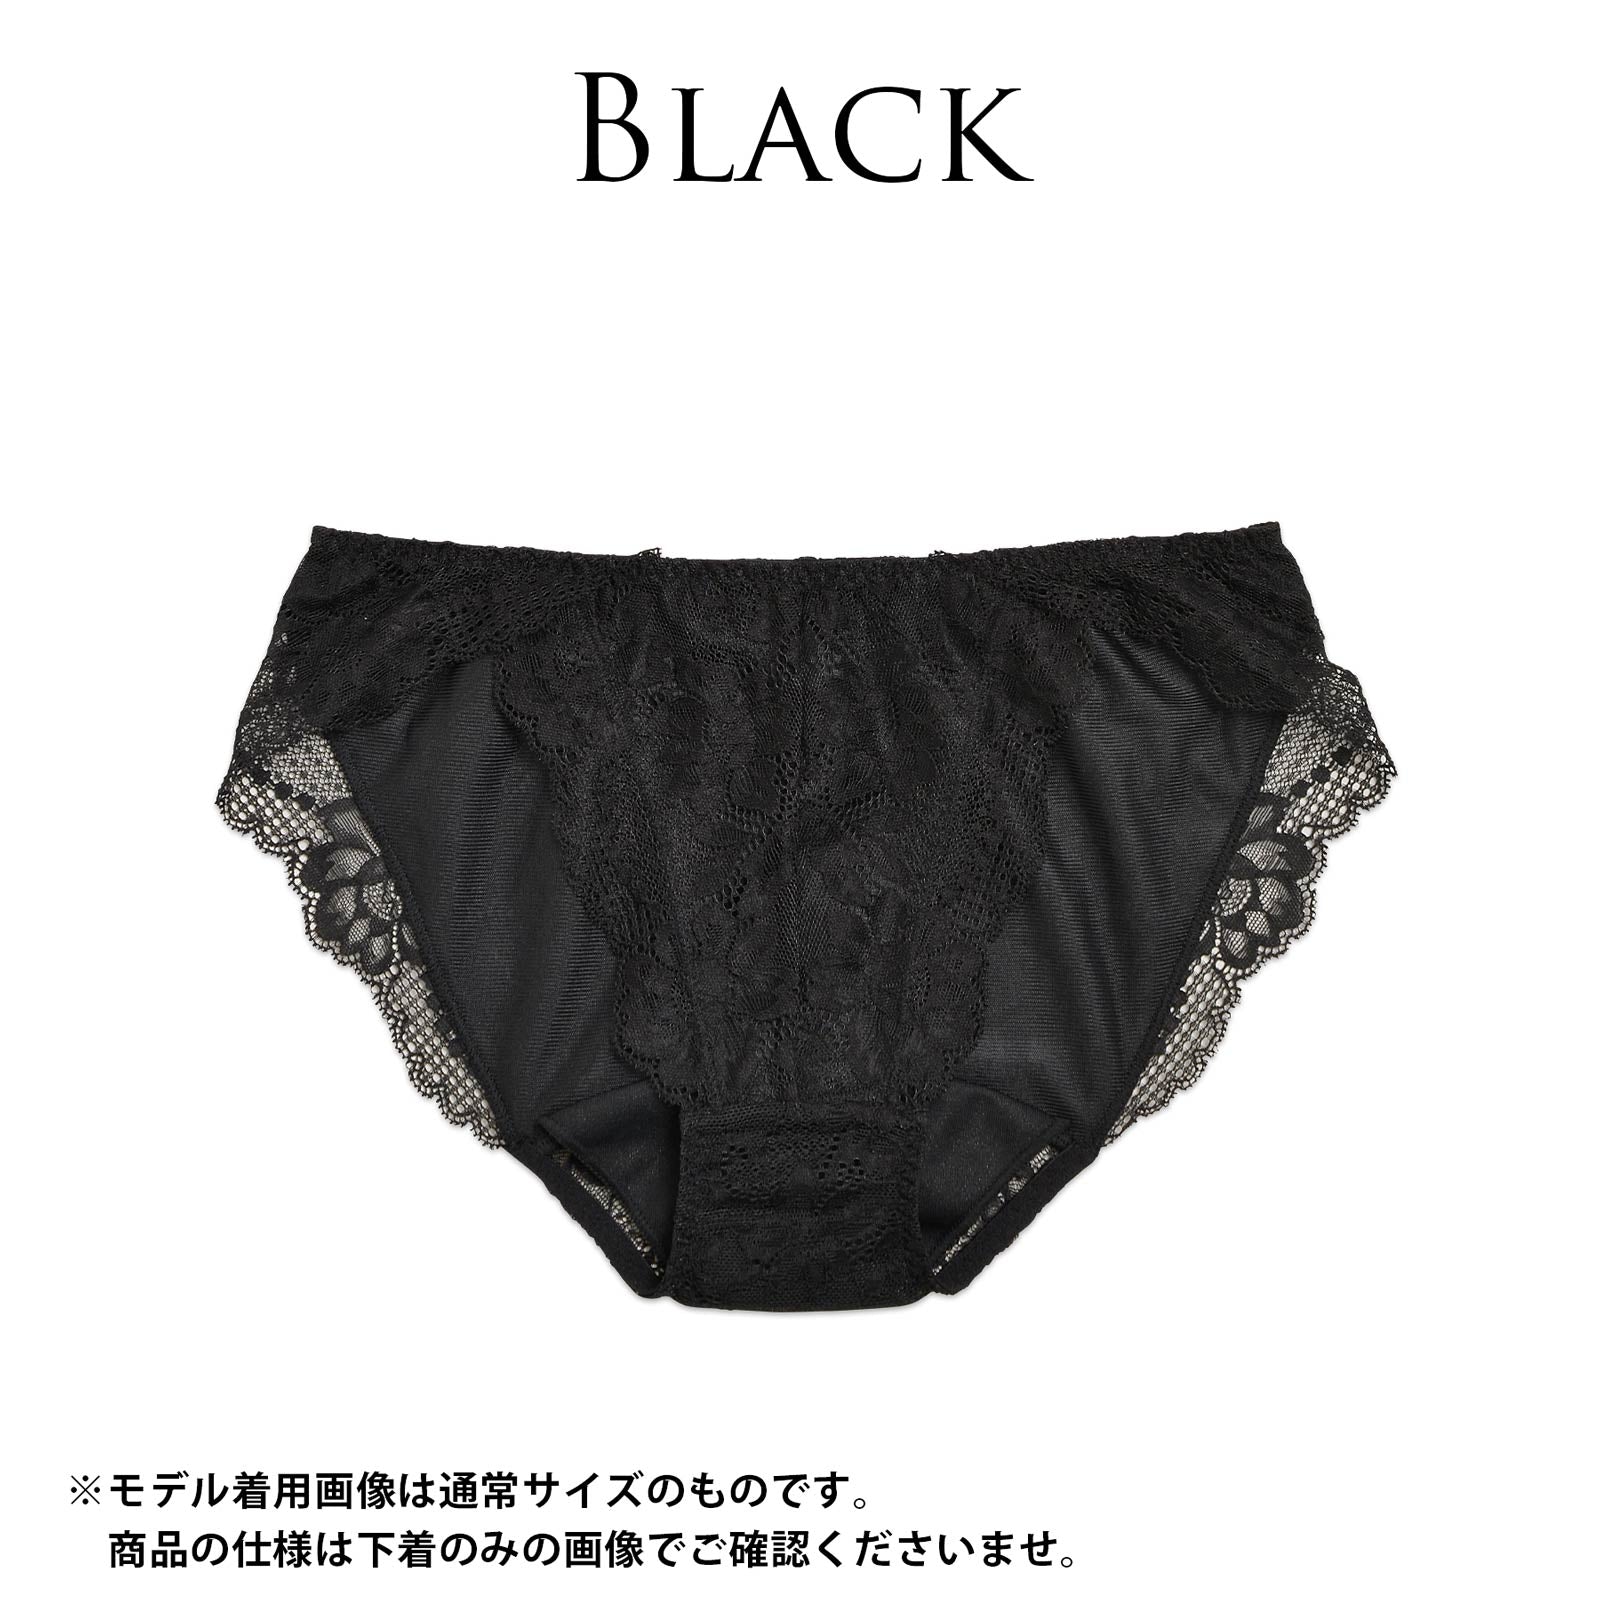 【明日花キララ着用/WhipBunny】Black Lace Sanitary Shorts ブラックレースサニタリーショーツ